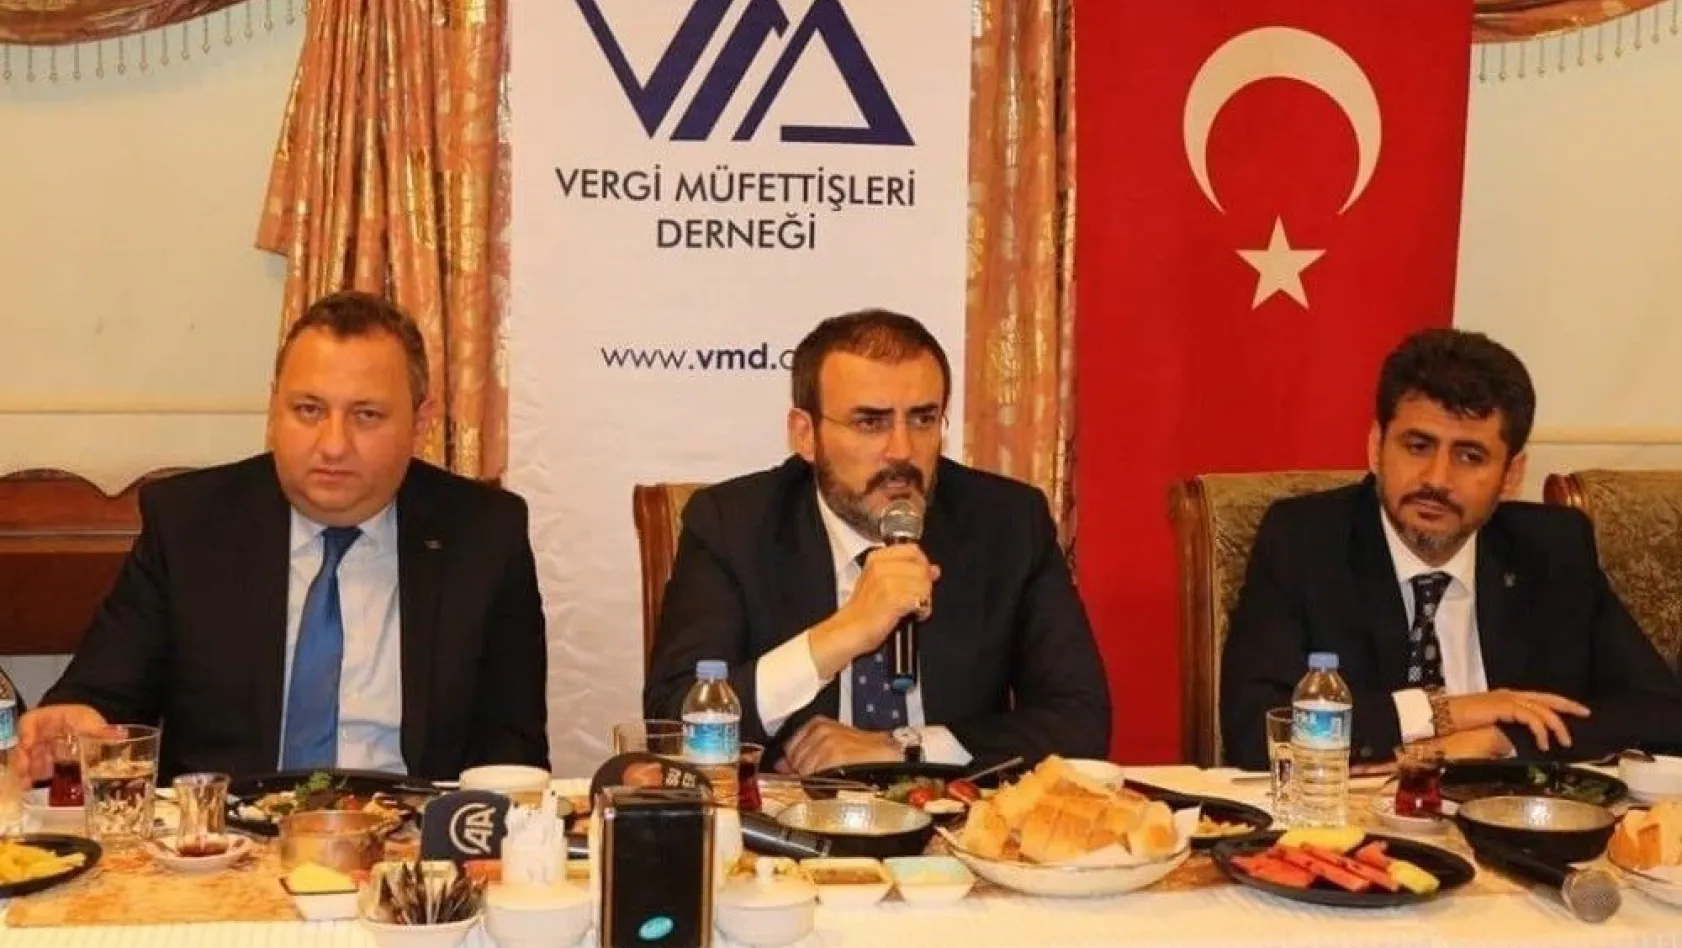 AK Parti Sözcüsü Ünal, VDK hakkında komisyona bilgi verecek
